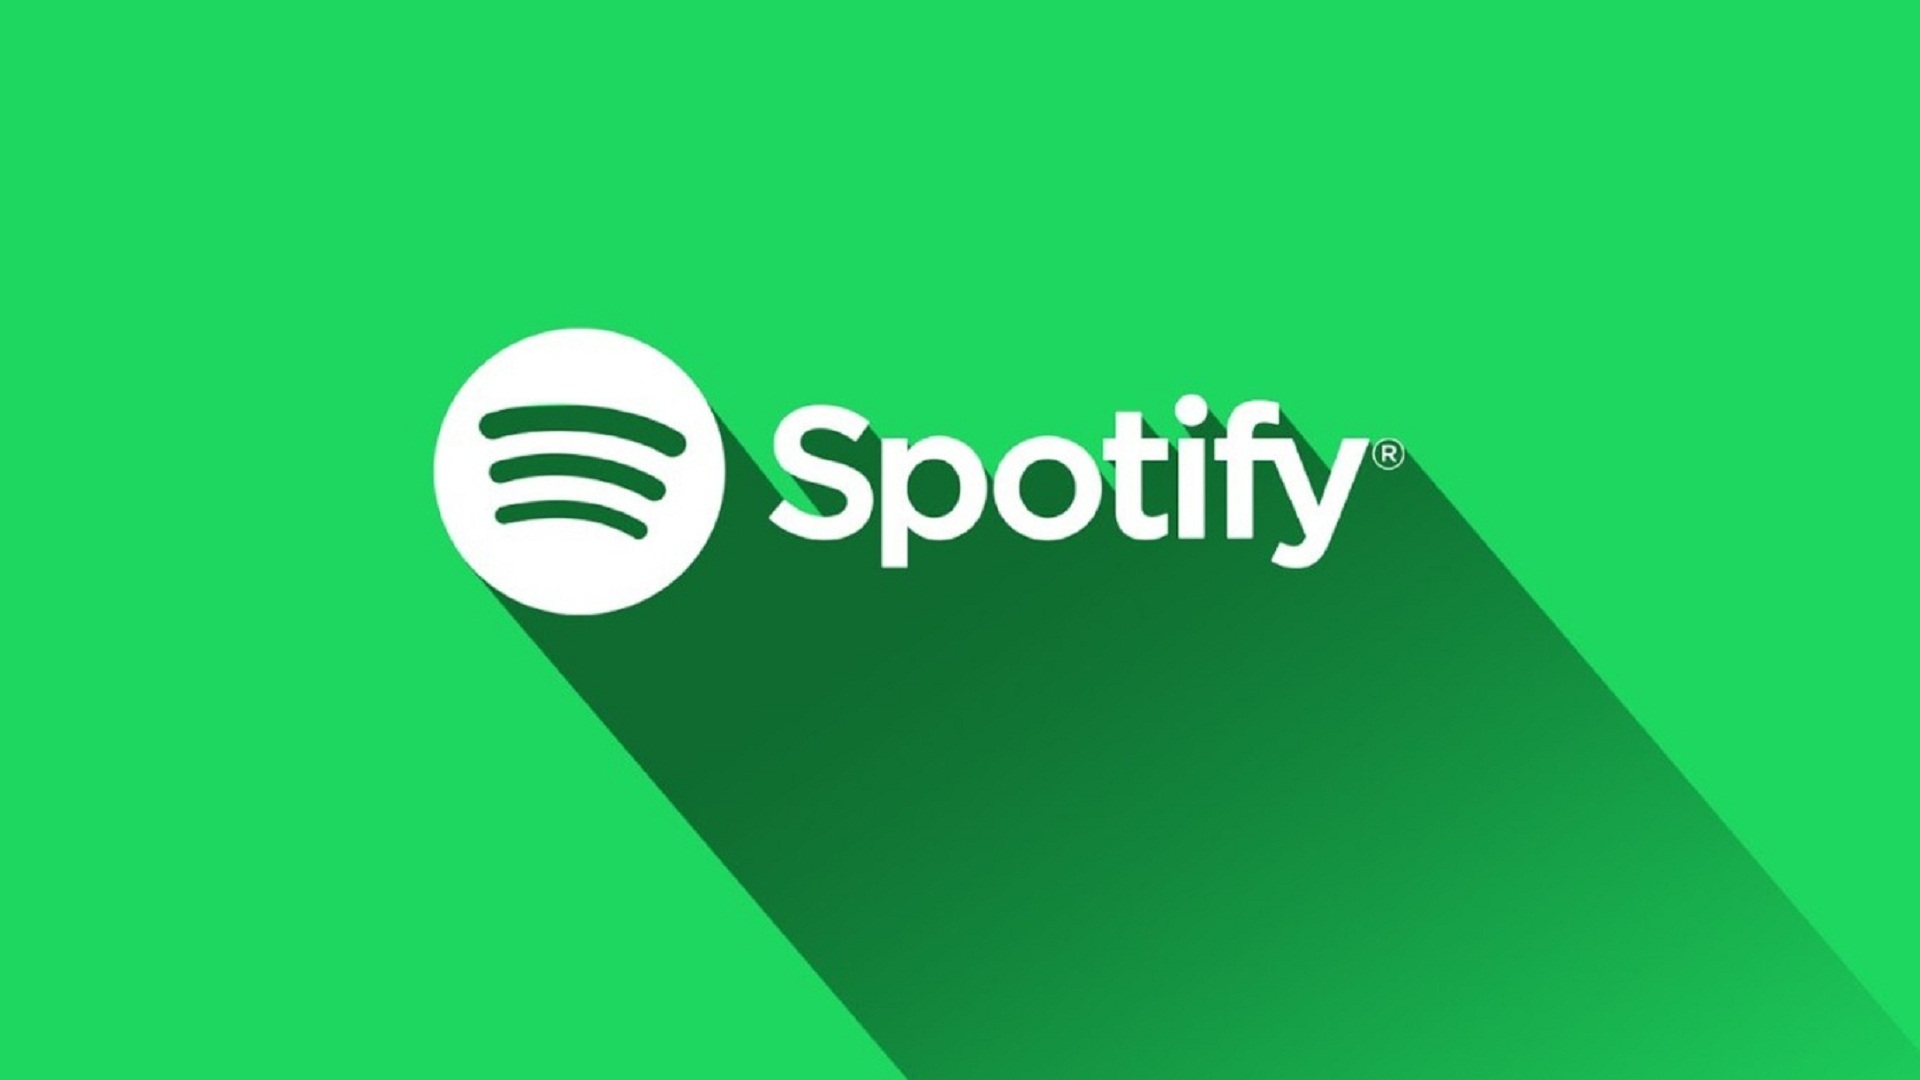 Spotify retirará los anuncios políticos en 2020